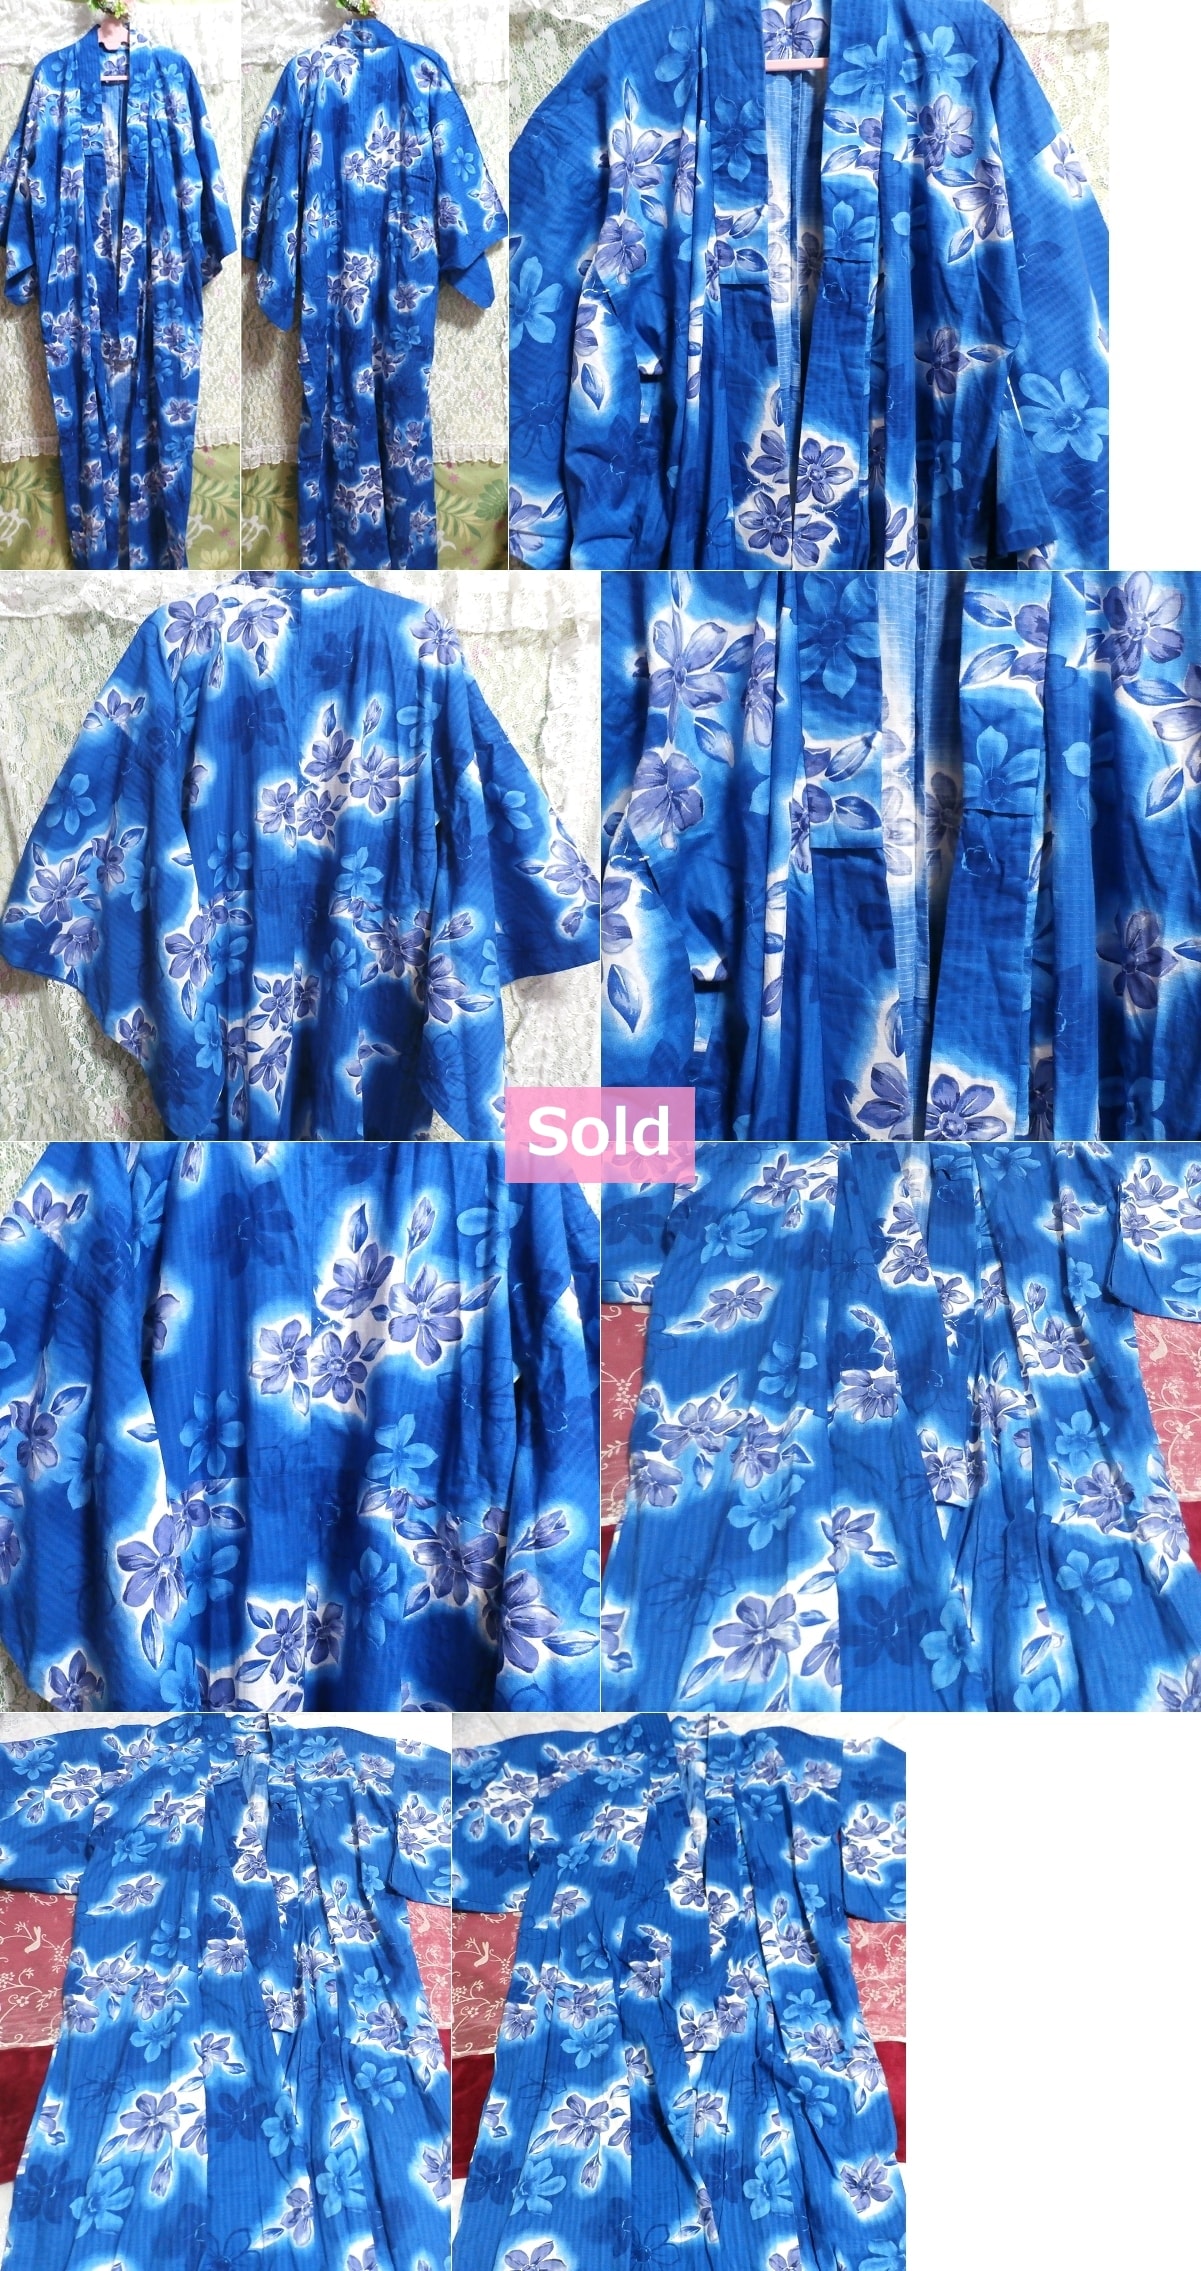 يوكاتا بنمط الزهور الزرقاء المضيئة/الملابس اليابانية/الكيمونو, يوكاتا, يوكاتا (مفرد), آحرون